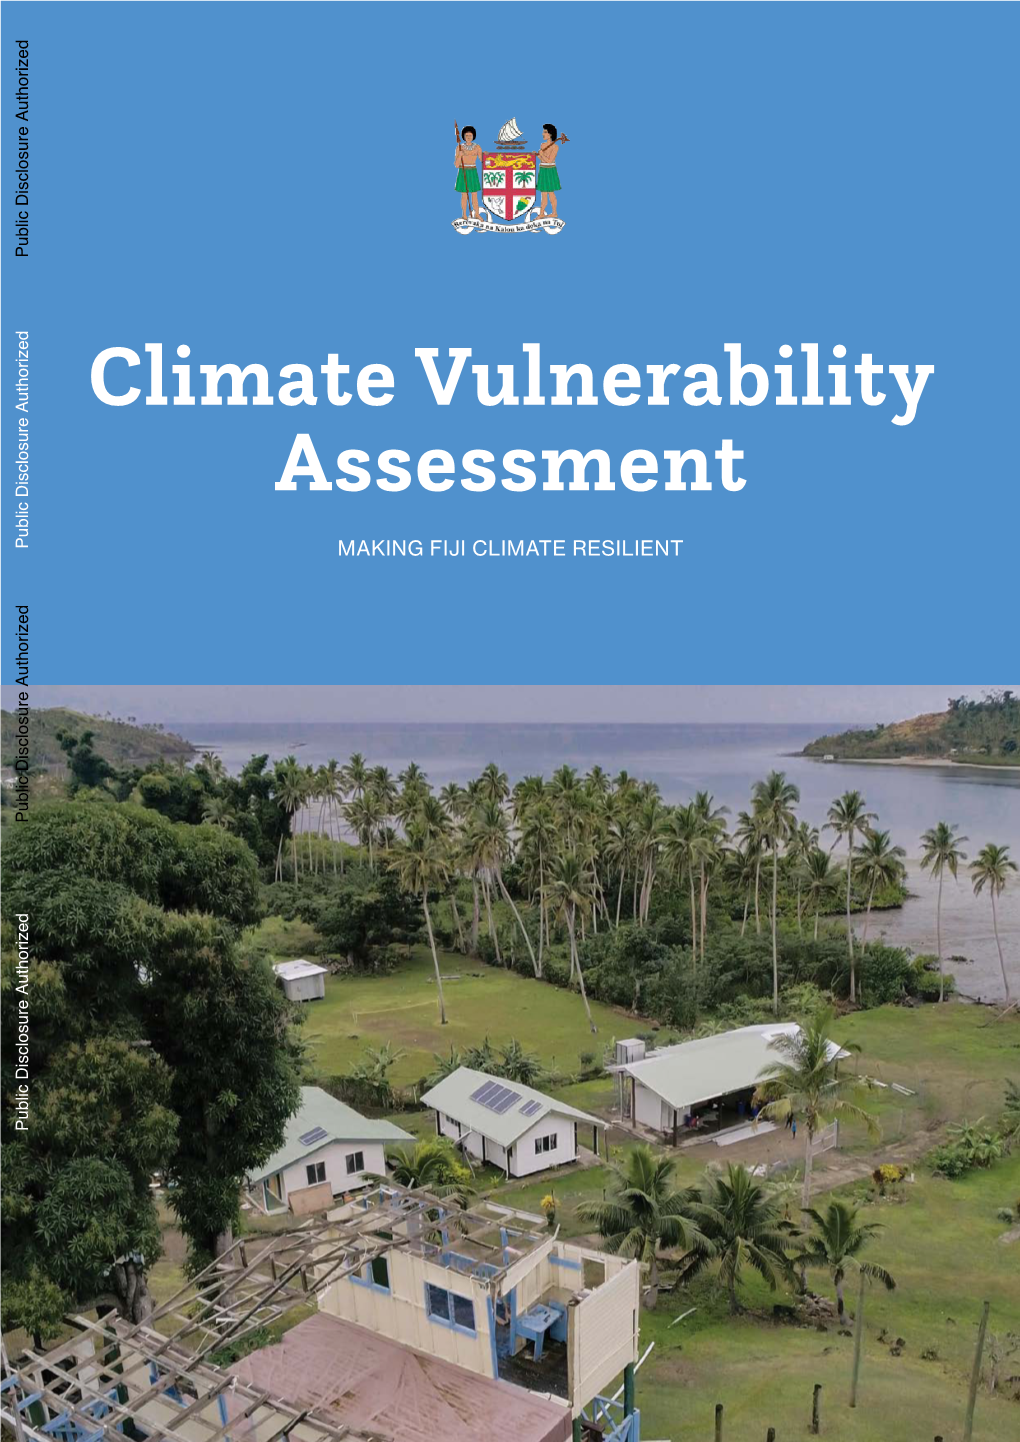 Fiji Climate Vulnerability Assessment 2017